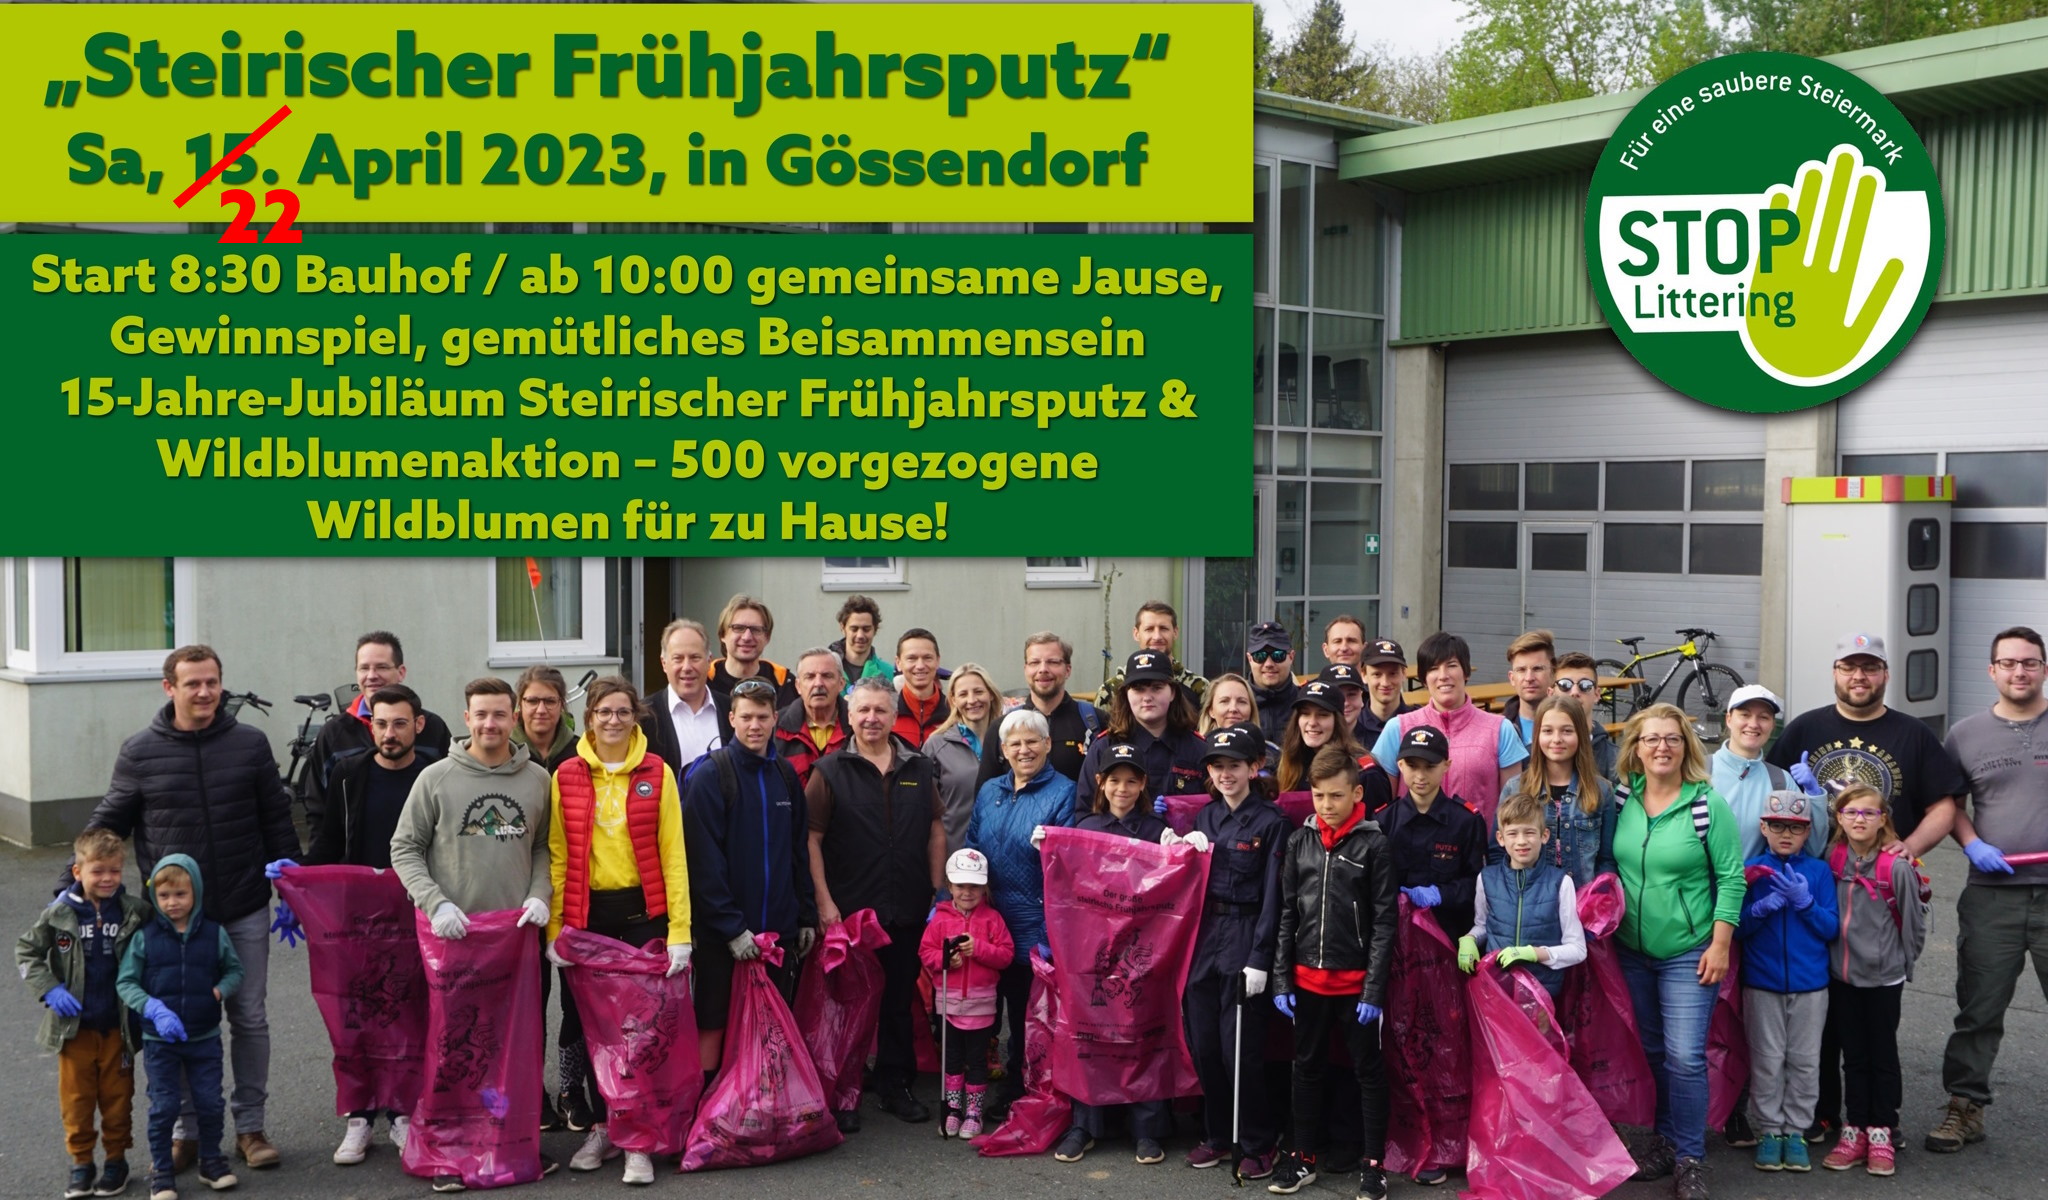 Gössendorfer Aktionstag „Steirischer Frühjahrsputz“ mit Wildblumenaktion und gemütlichen Beisammensein